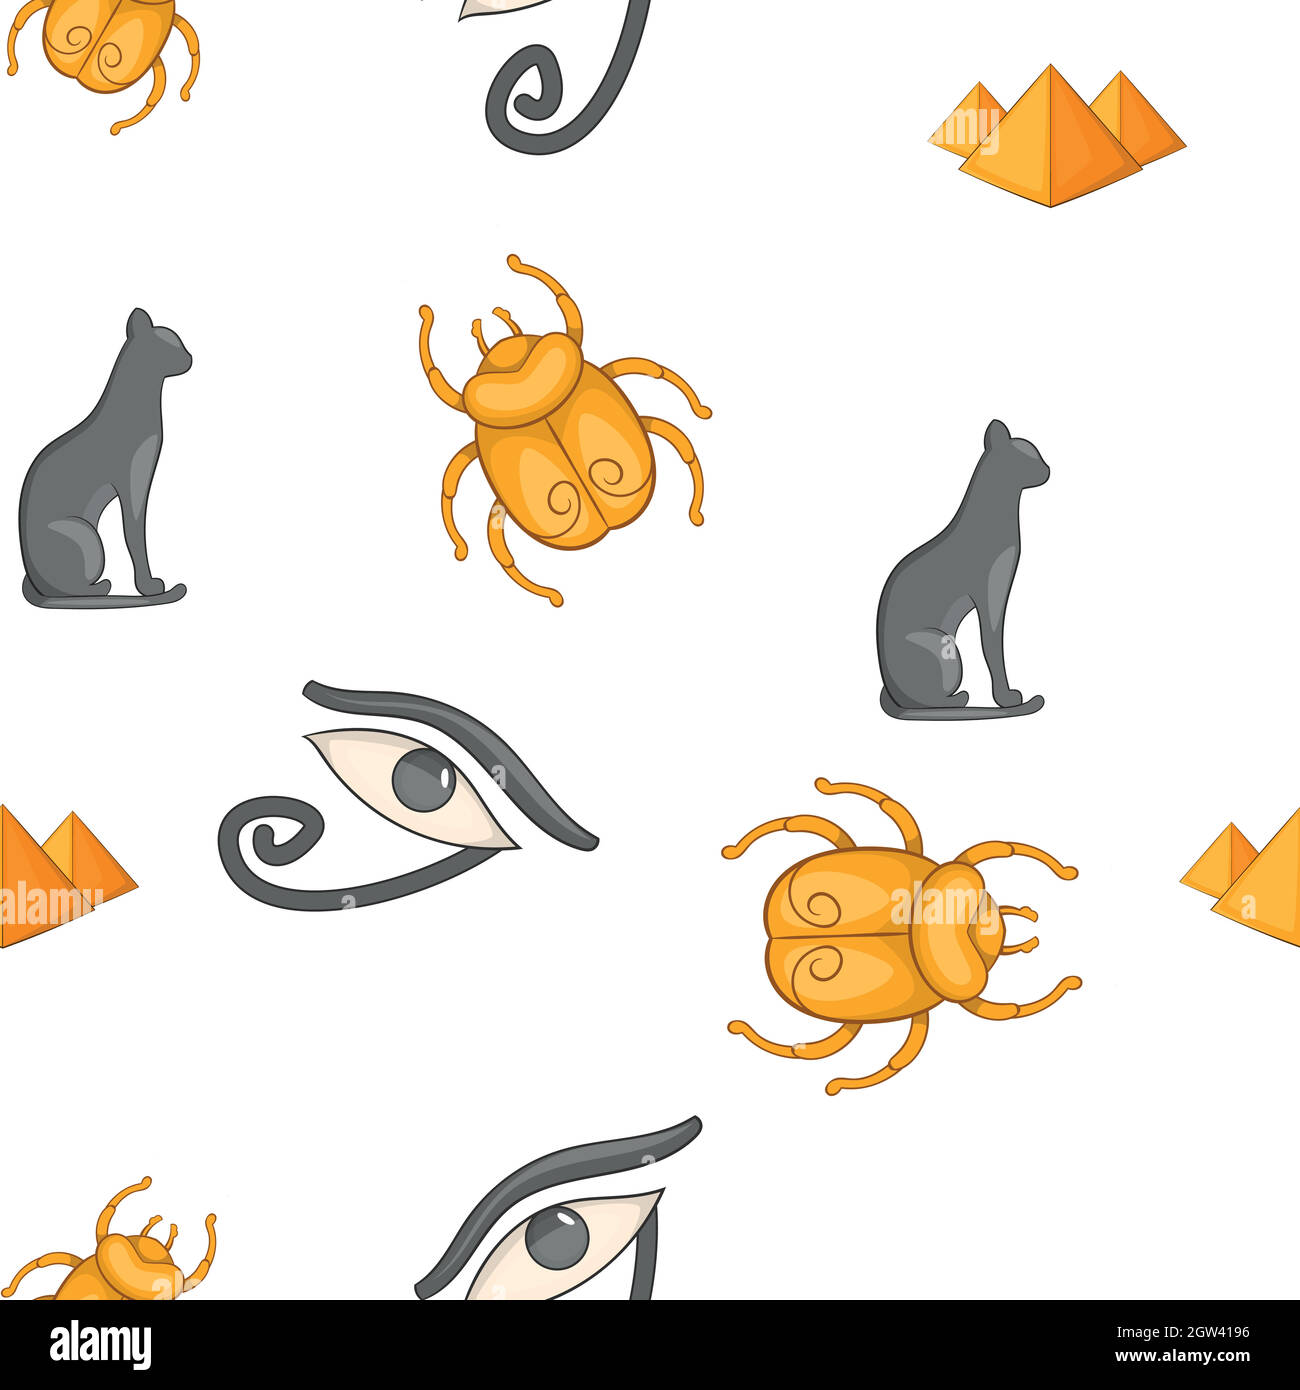 Egyptian symbols pattern, cartoon style Stock Vector